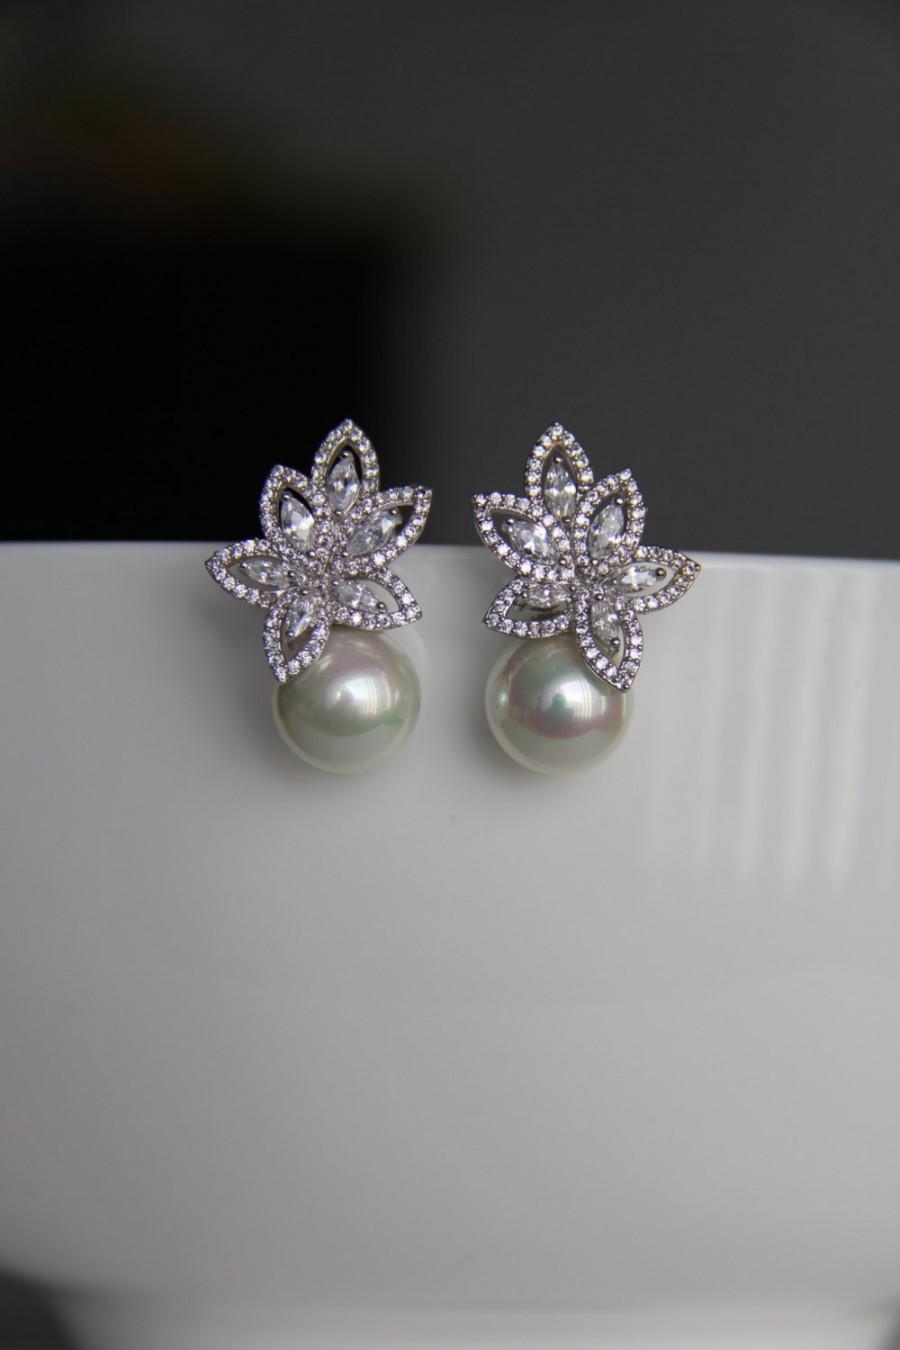 Wedding - Bridal earrings, cz earrings, wedding earrings, bridesmaid earrings, bridal jewelry, wedding jewelry, cz jewelry, dangley earrings